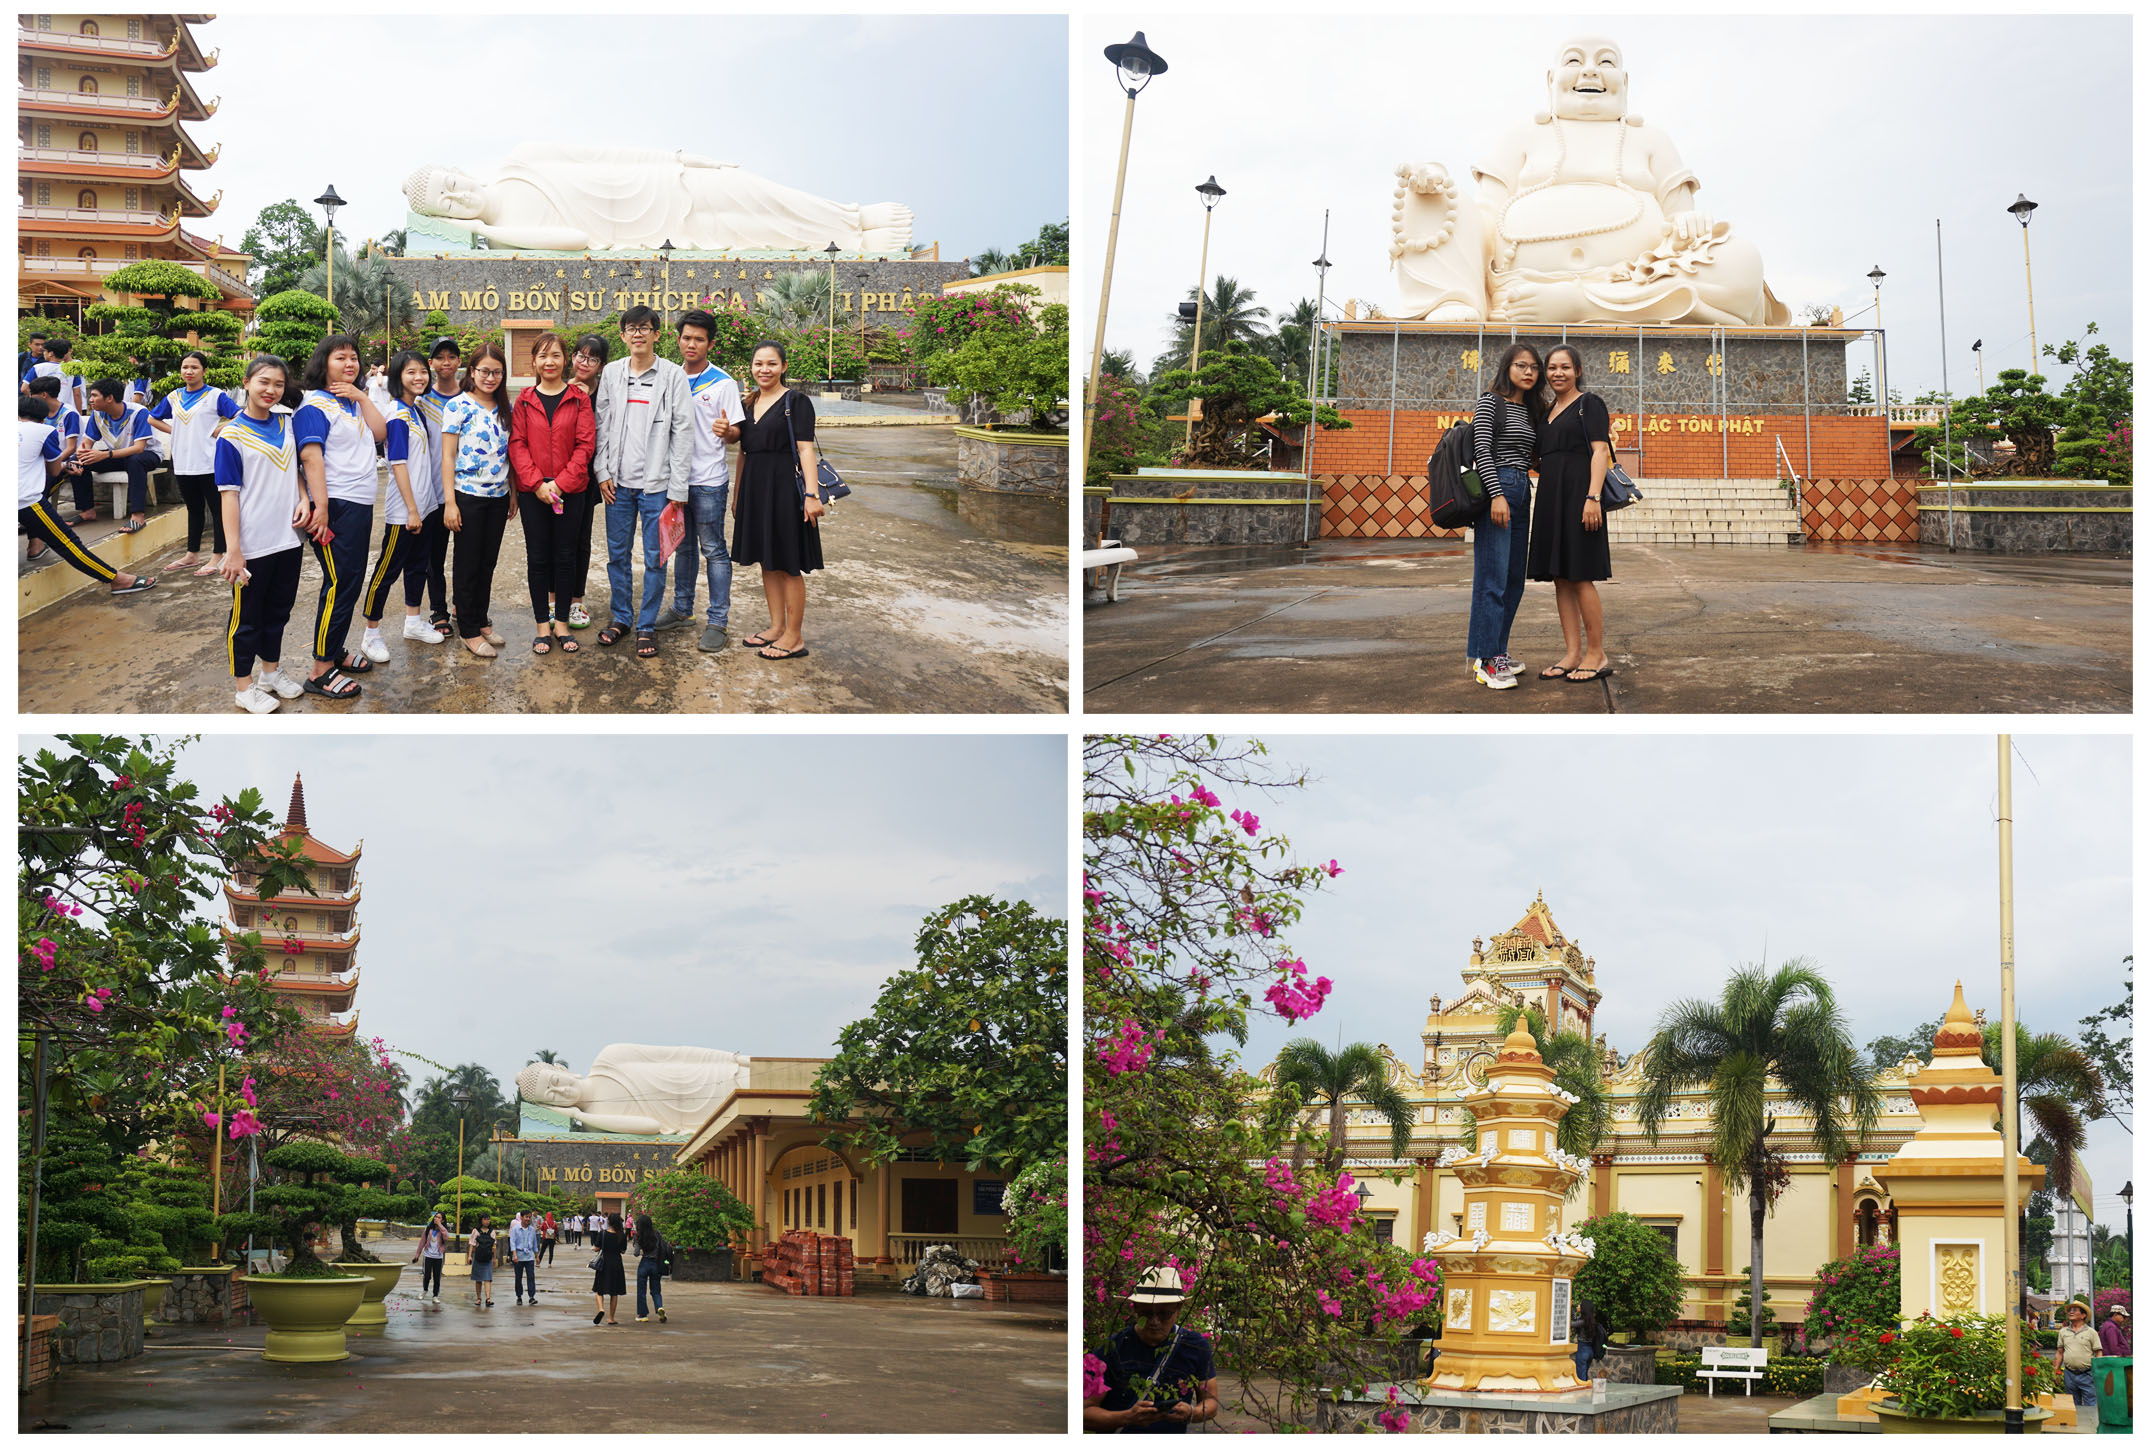 Đoàn trường THCS và THPT Ngọc Viễn Đông tại danh thắng chùa Vĩnh Tràng trong chuyến học tập trải nghiệm khối THPT